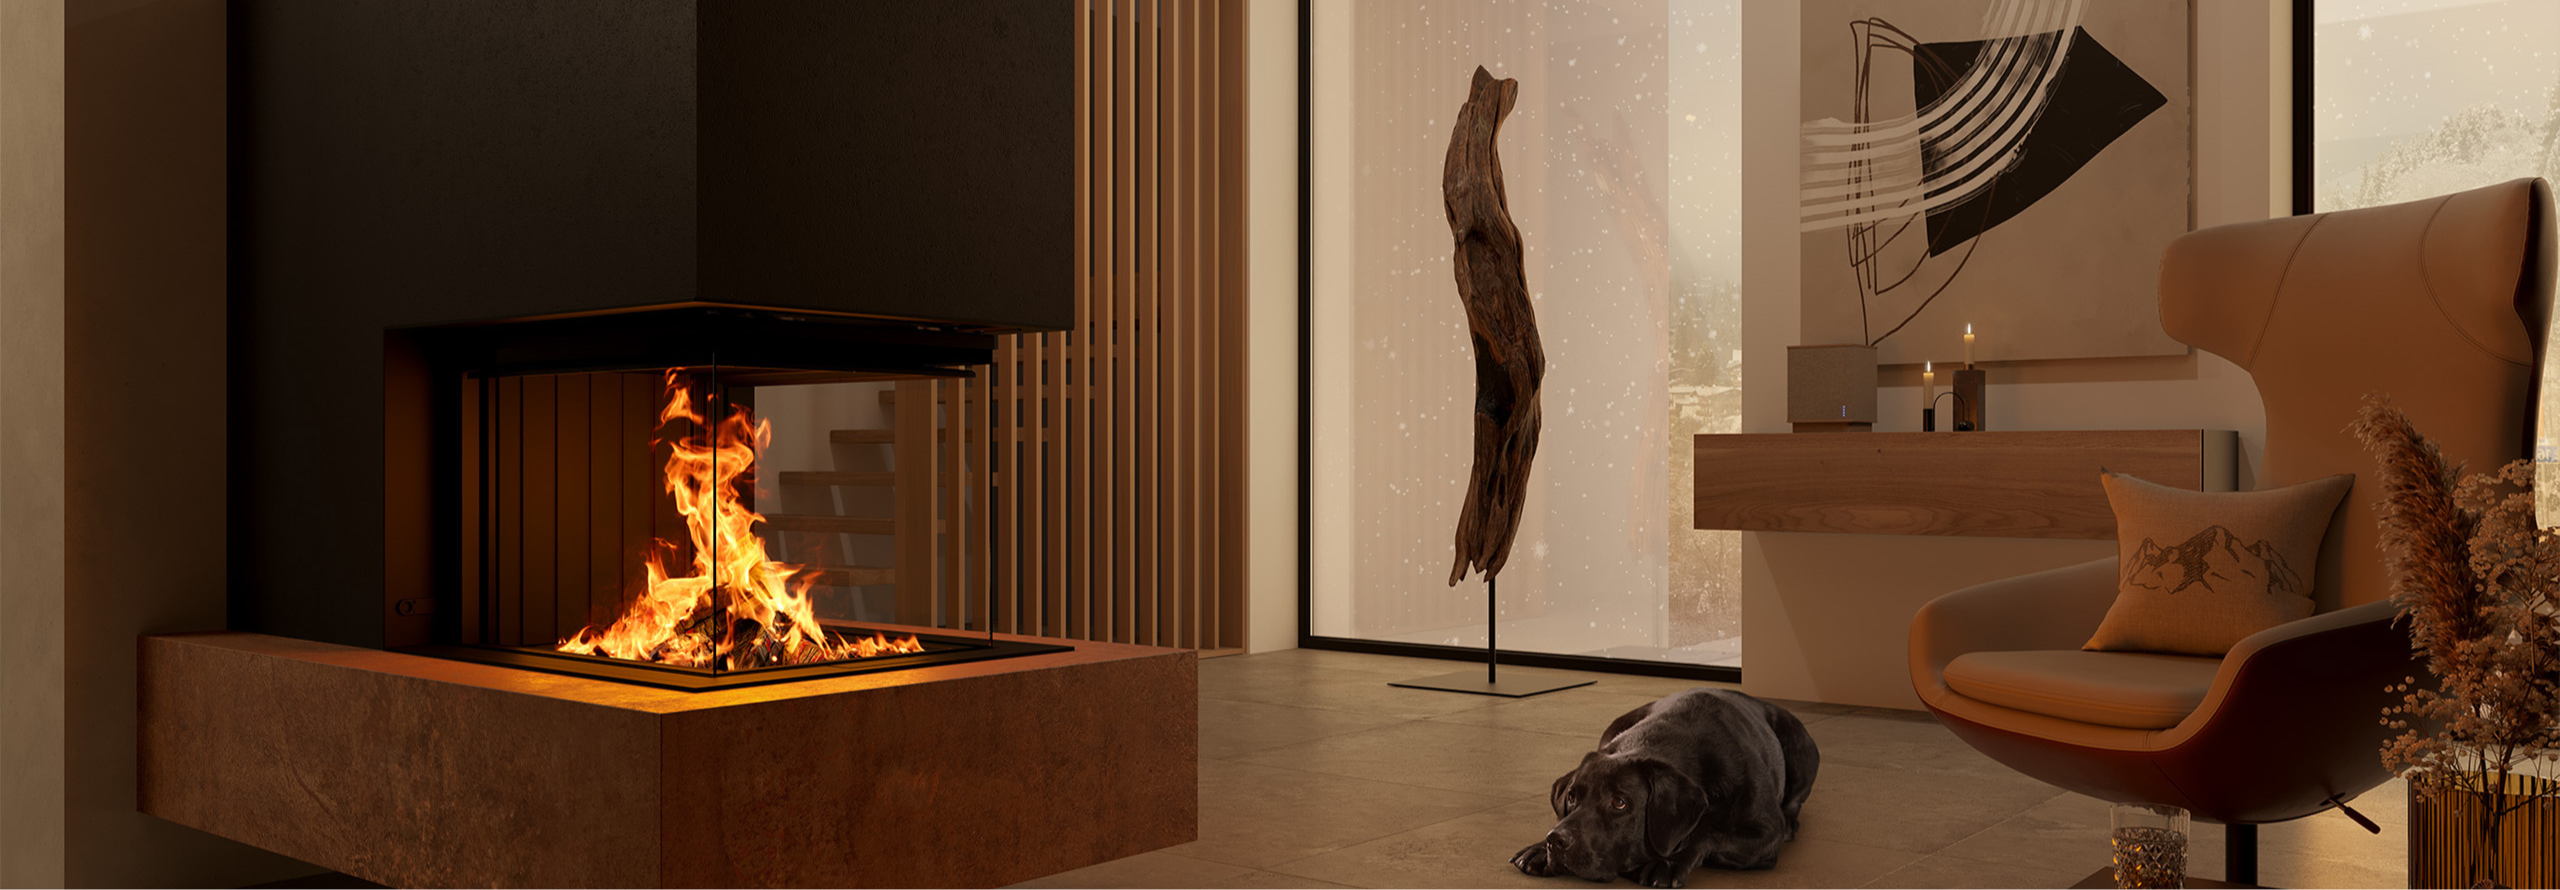 Ein dreiseitiger Kamin als Raumteiler zwischen dem Wohn- und Essbereich, vor dem ein schwarzer Hund liegt.